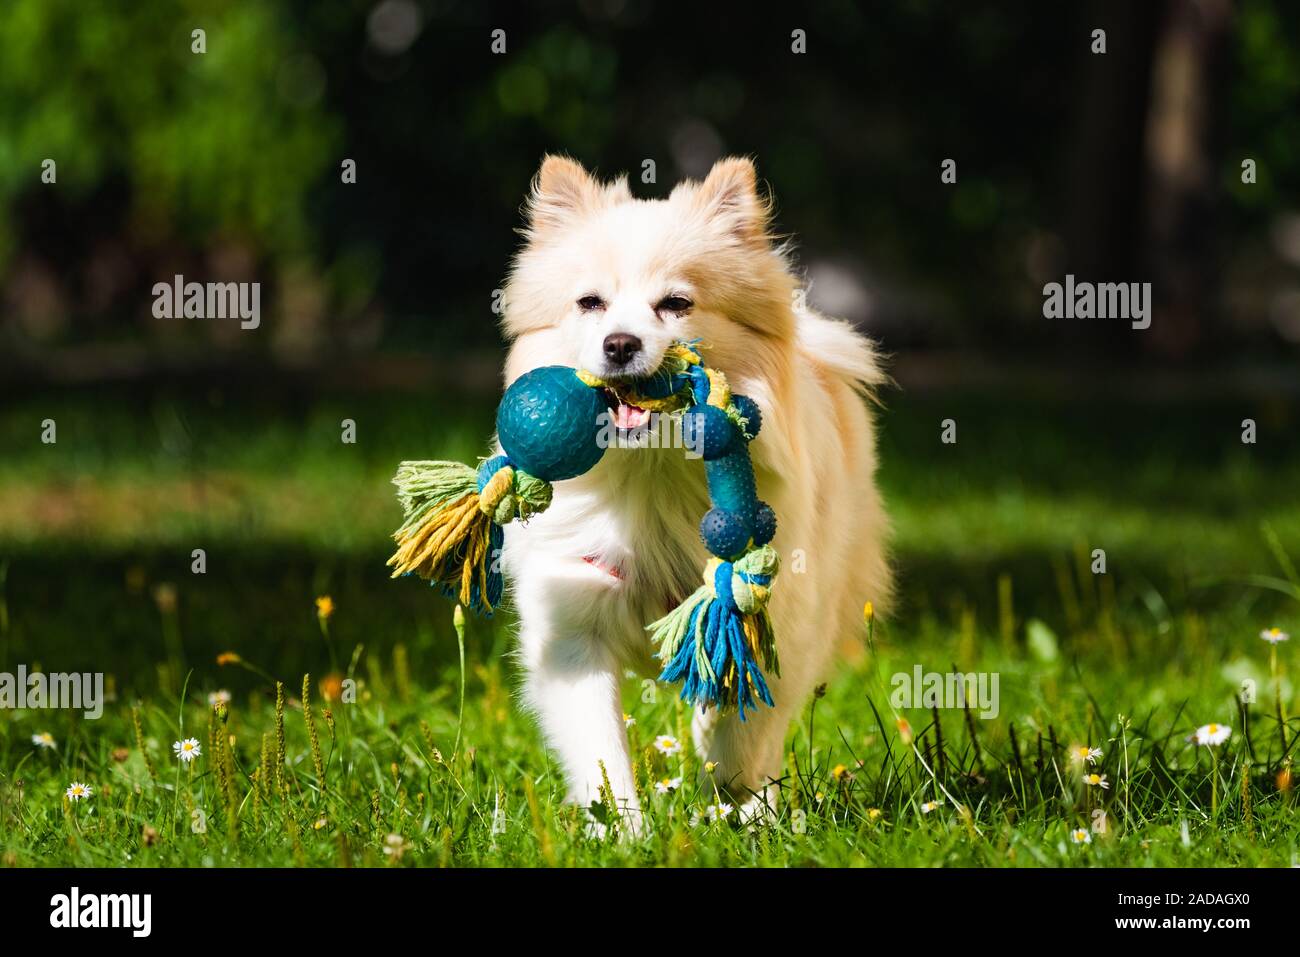 Chien Pomeranian spitz allemand klein aller chercher un jouet en courant vers la caméra. Banque D'Images